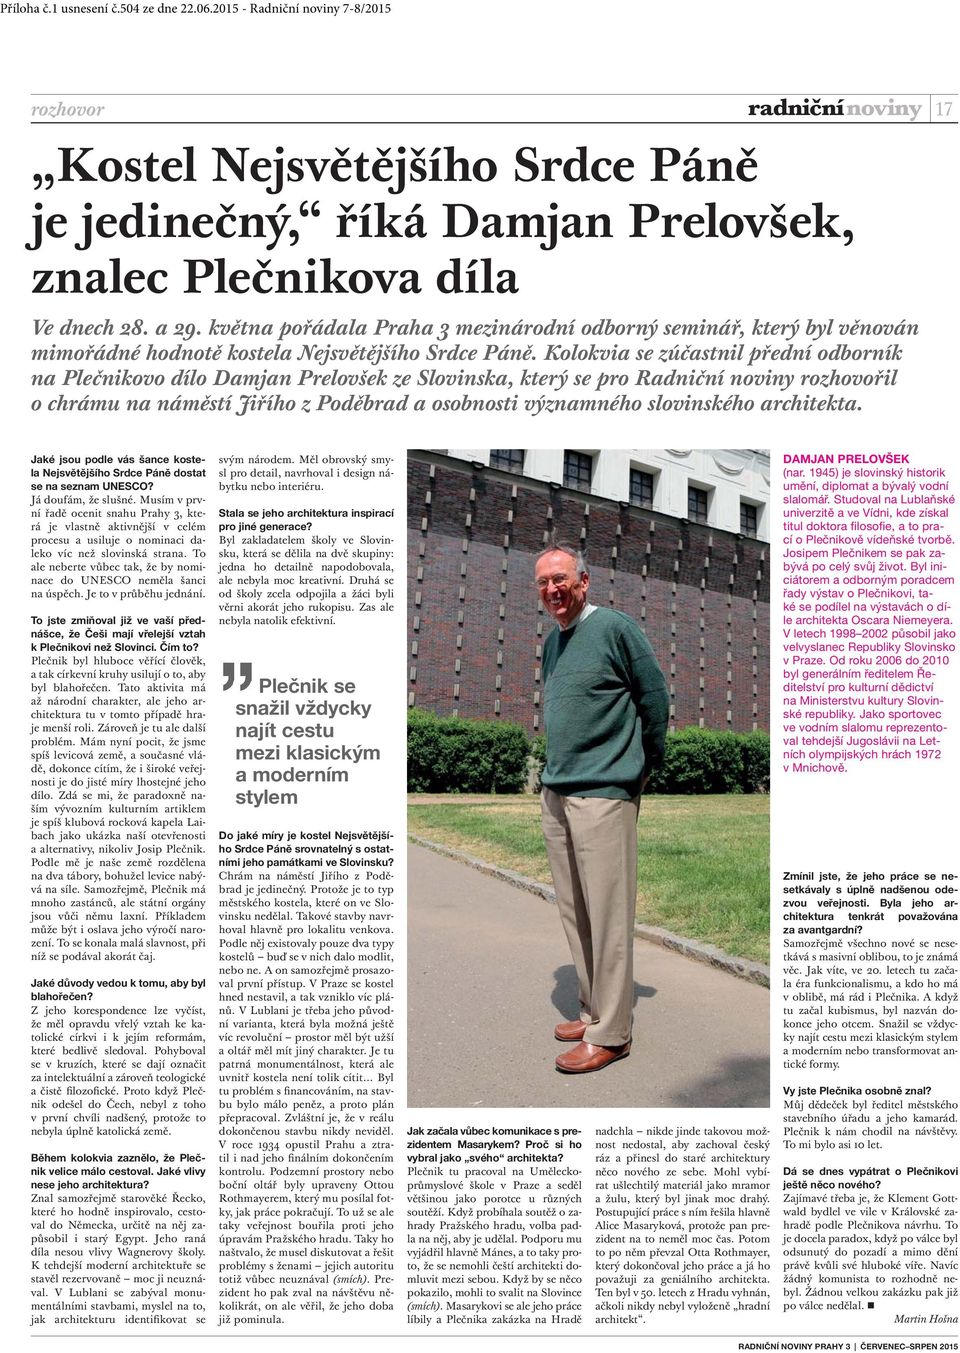 Kolokvia se zúčastnil přední odborník na Plečnikovo dílo Damjan Prelovšek ze Slovinska, který se pro Radniční noviny rozhovořil o chrámu na náměstí Jiřího z Poděbrad a osobnosti významného